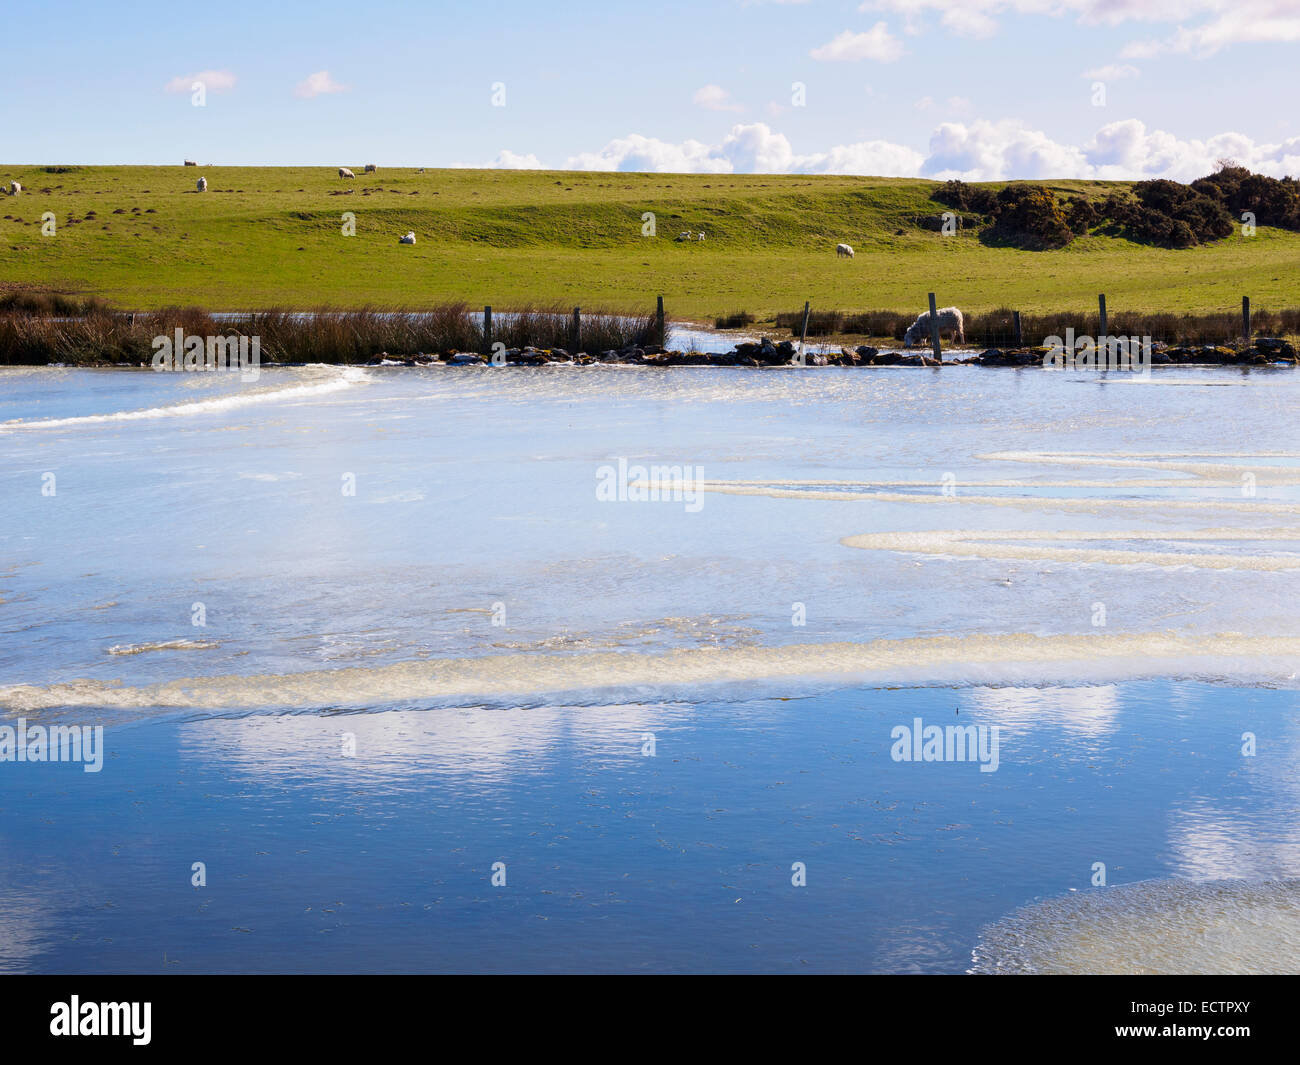 Les terres agricoles inondées avec une grande flaque d'eau gelée et les brebis avec des agneaux. Ile d'Anglesey, dans le Nord du Pays de Galles, Royaume-Uni, Angleterre Banque D'Images